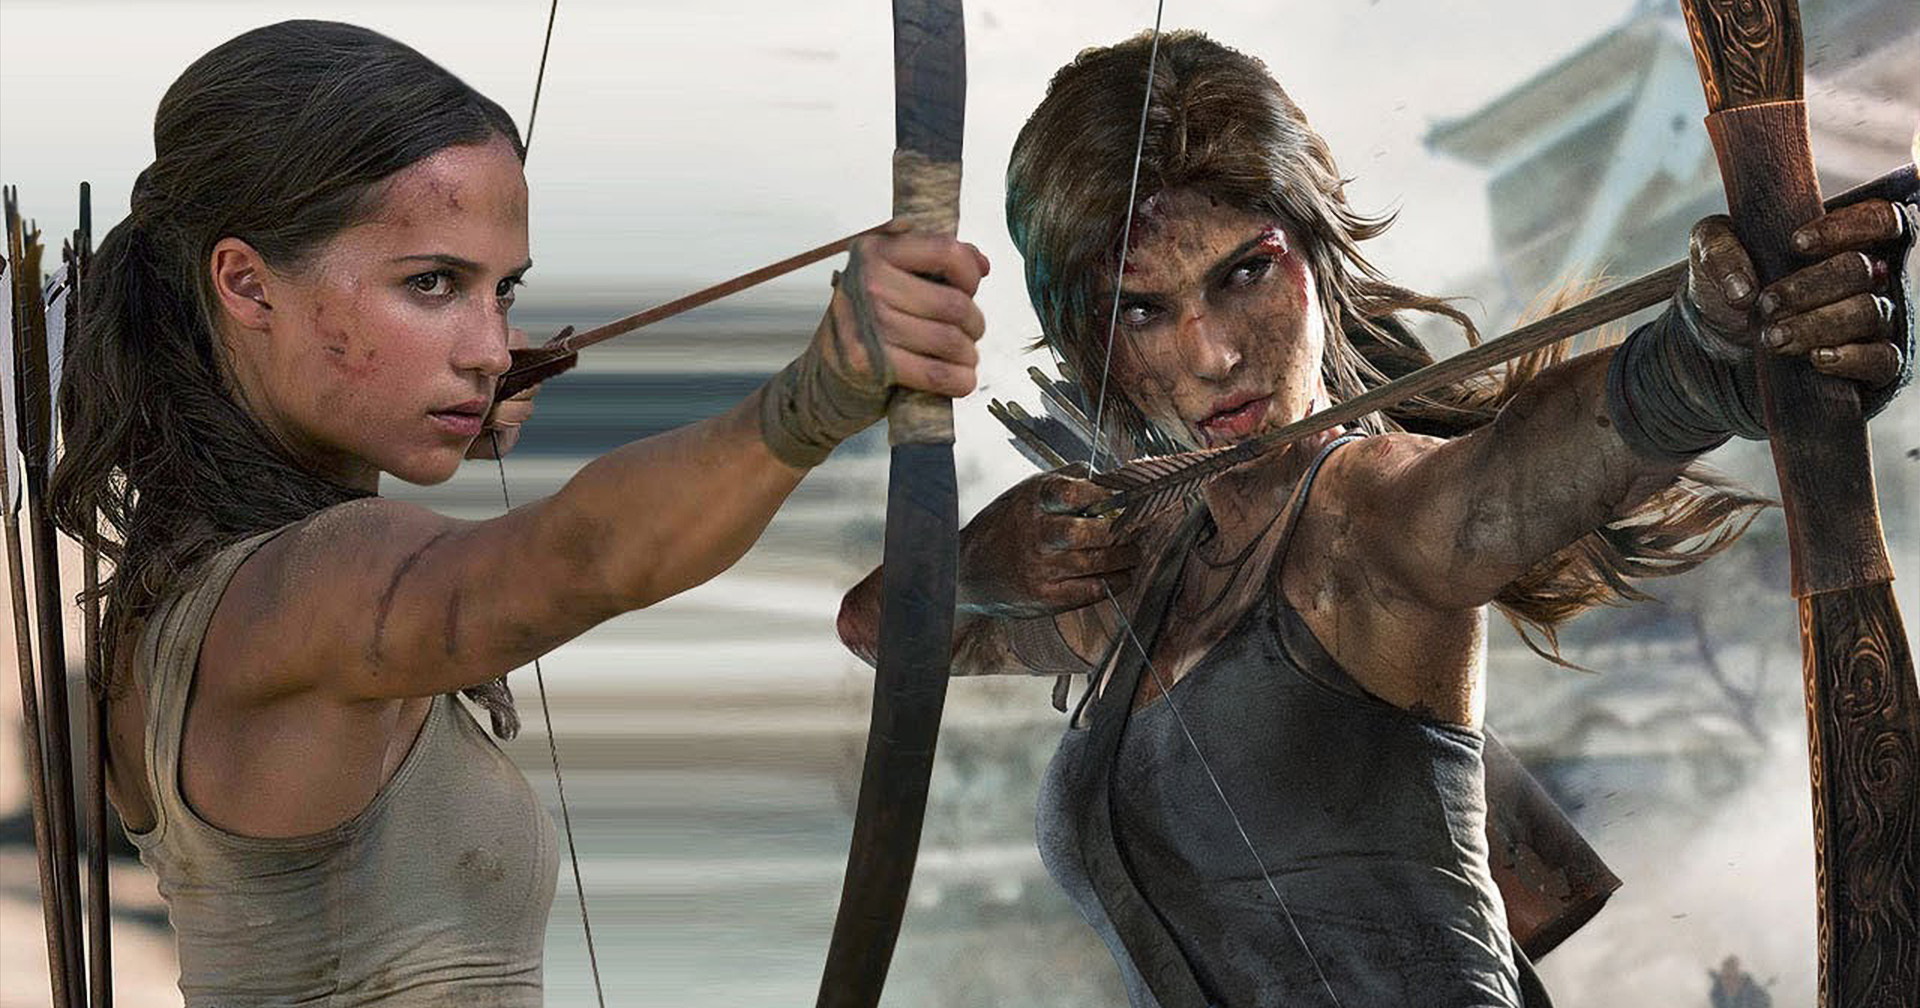 สิทธิ์ในการสร้างภาพยนตร์ Tomb Raider กลับสู่ตลาดประมูล หลัง MGM เสียสิทธิ์ในการสร้างไปแล้ว